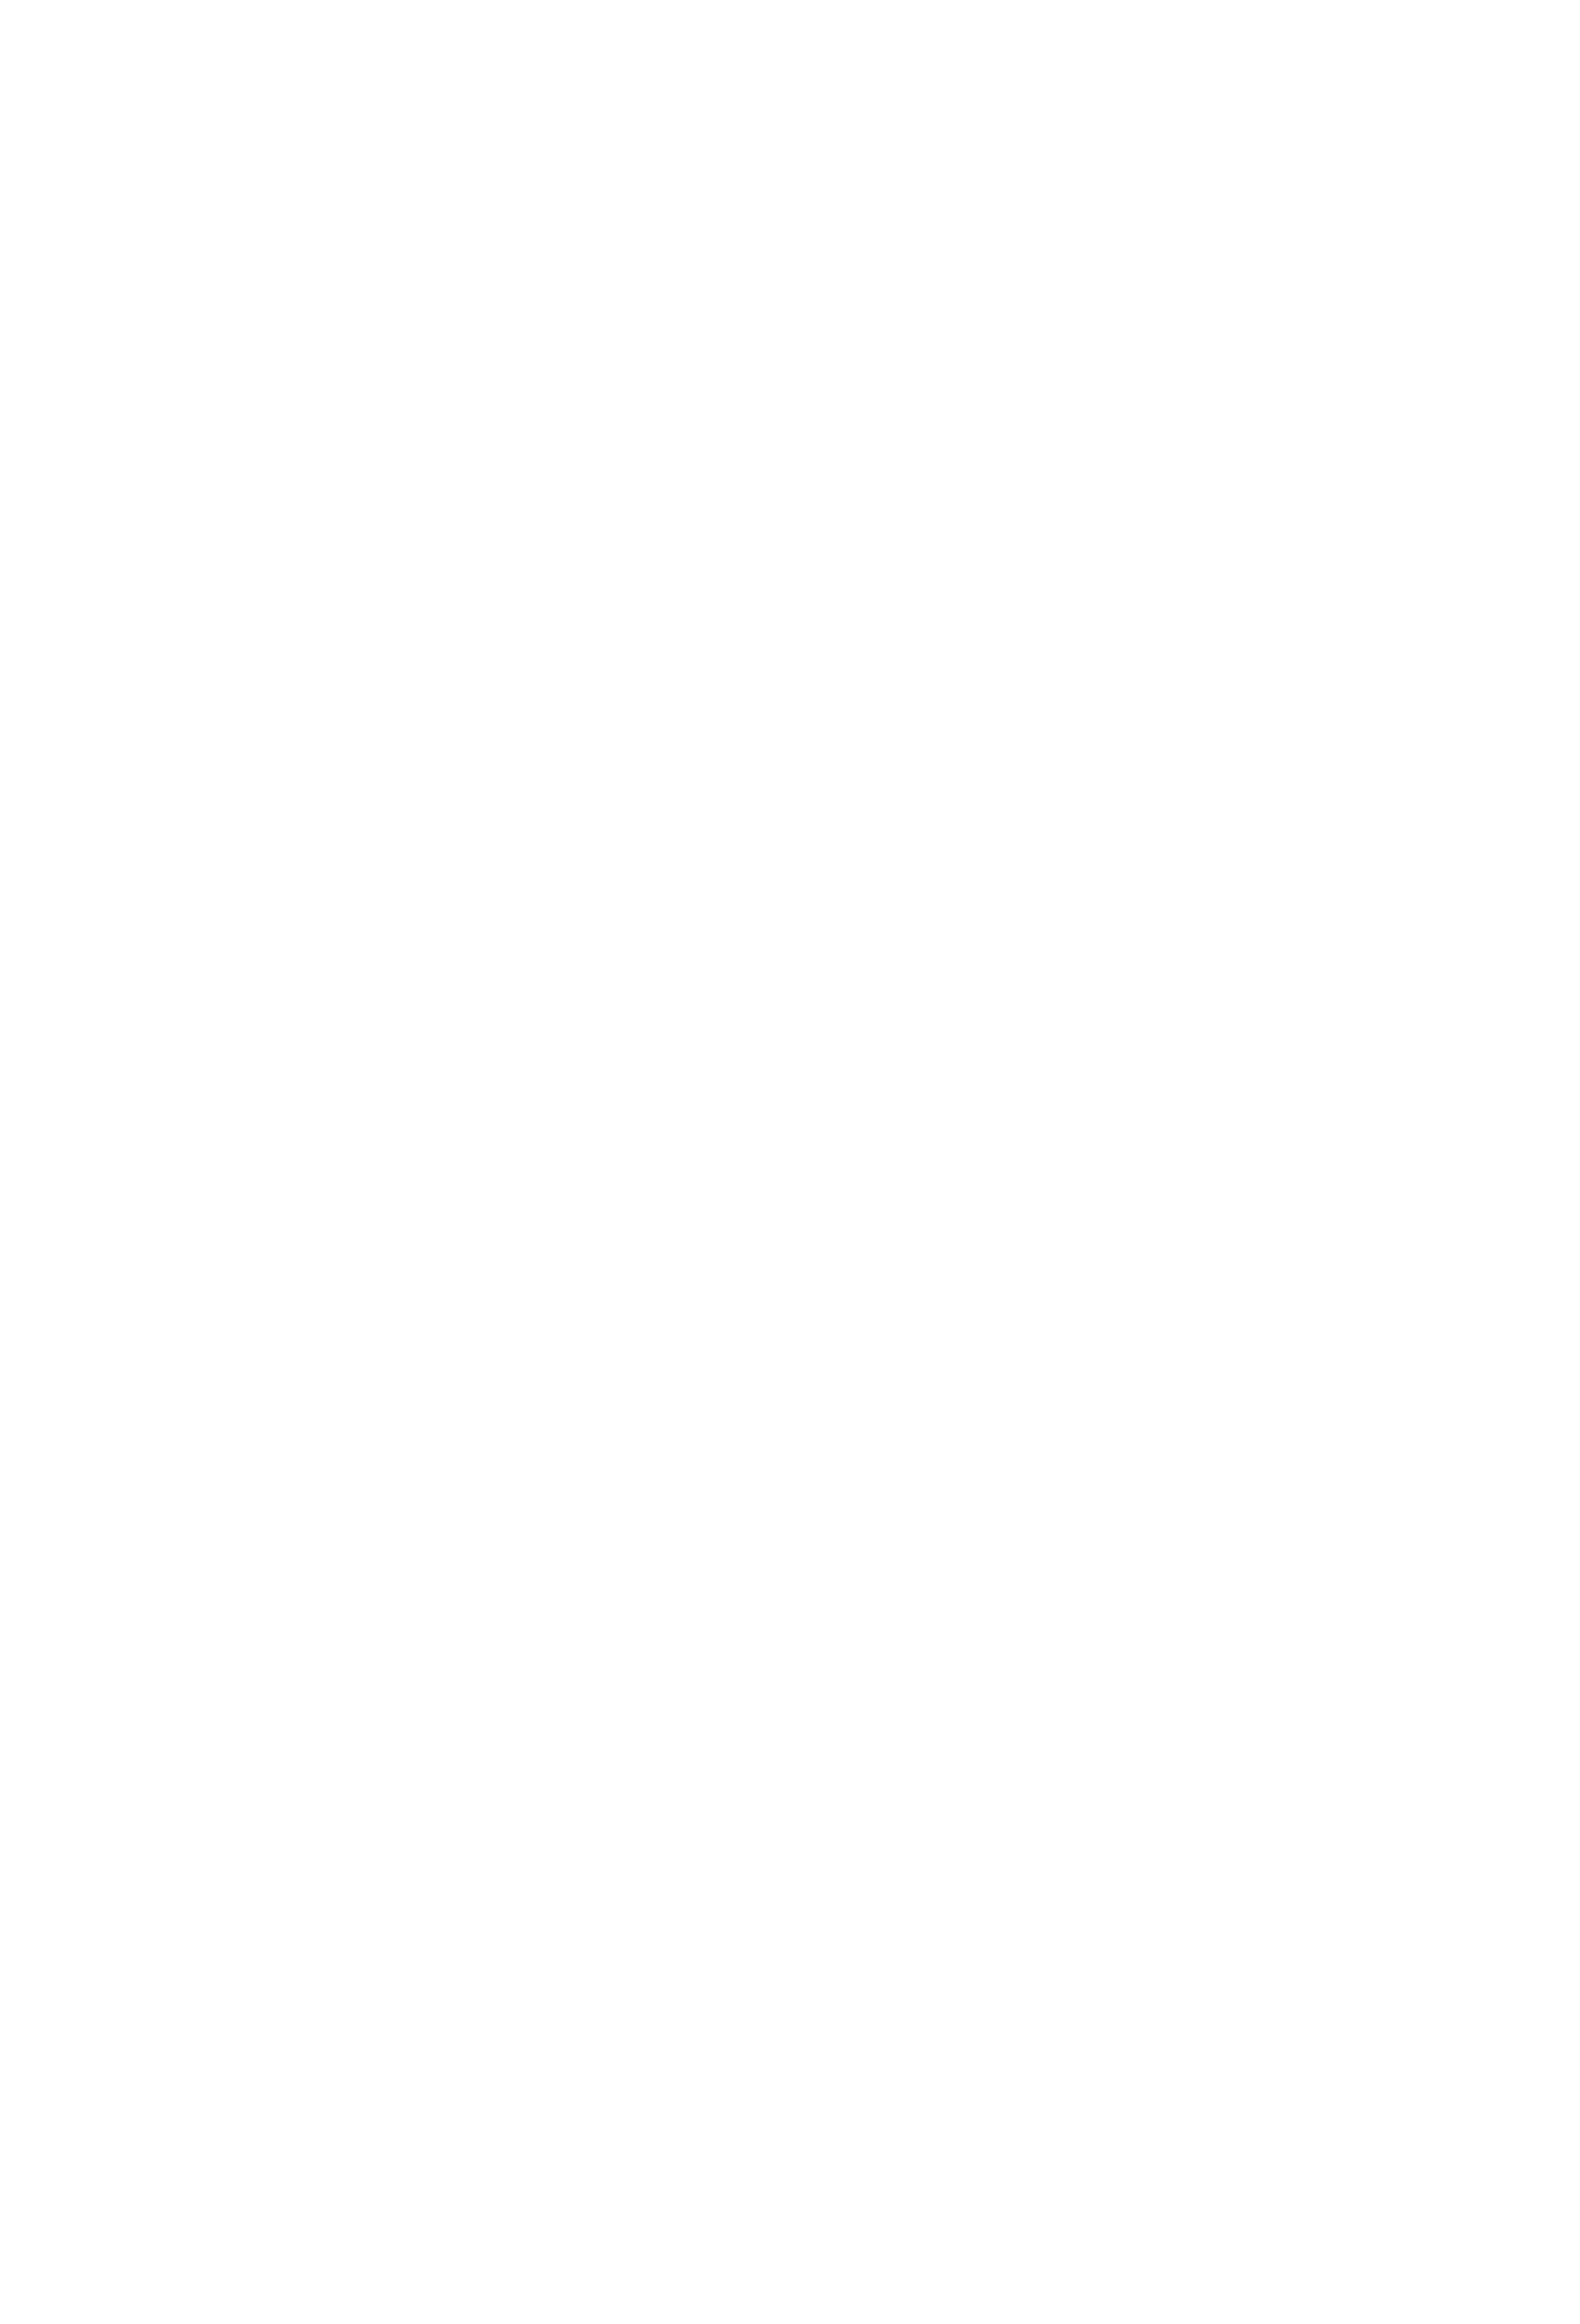 Sedona Shuttle Logo